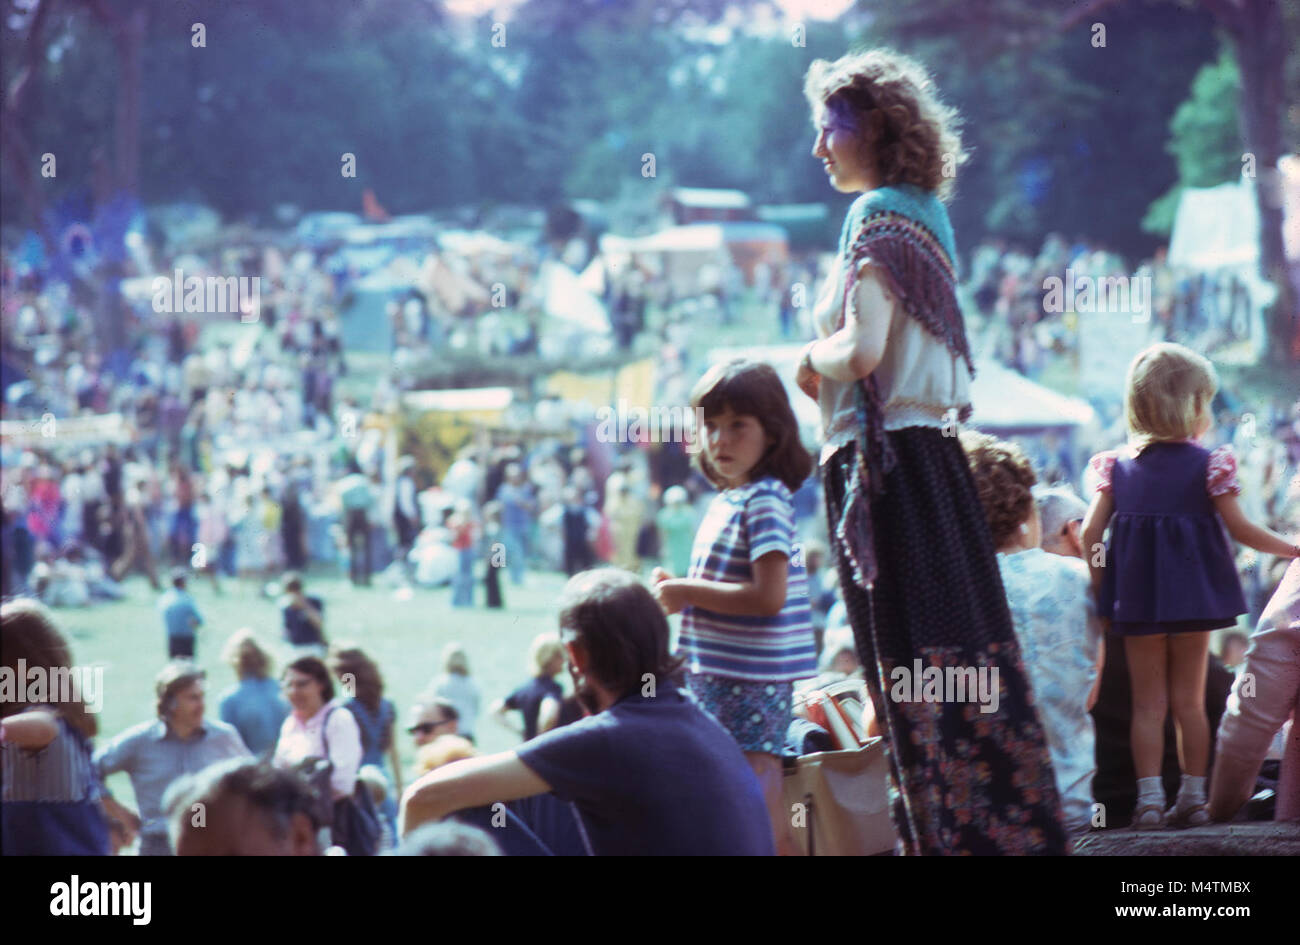 Vintage Foto von schönen Hippie Frau Mutter, Mann und Kinder 70er Jahre  Sommer Hippie Mode Musikfestival auf Barsham Fair in Beccles, Suffolk  Engalnd UK KATHY DEWITT Stockfotografie - Alamy